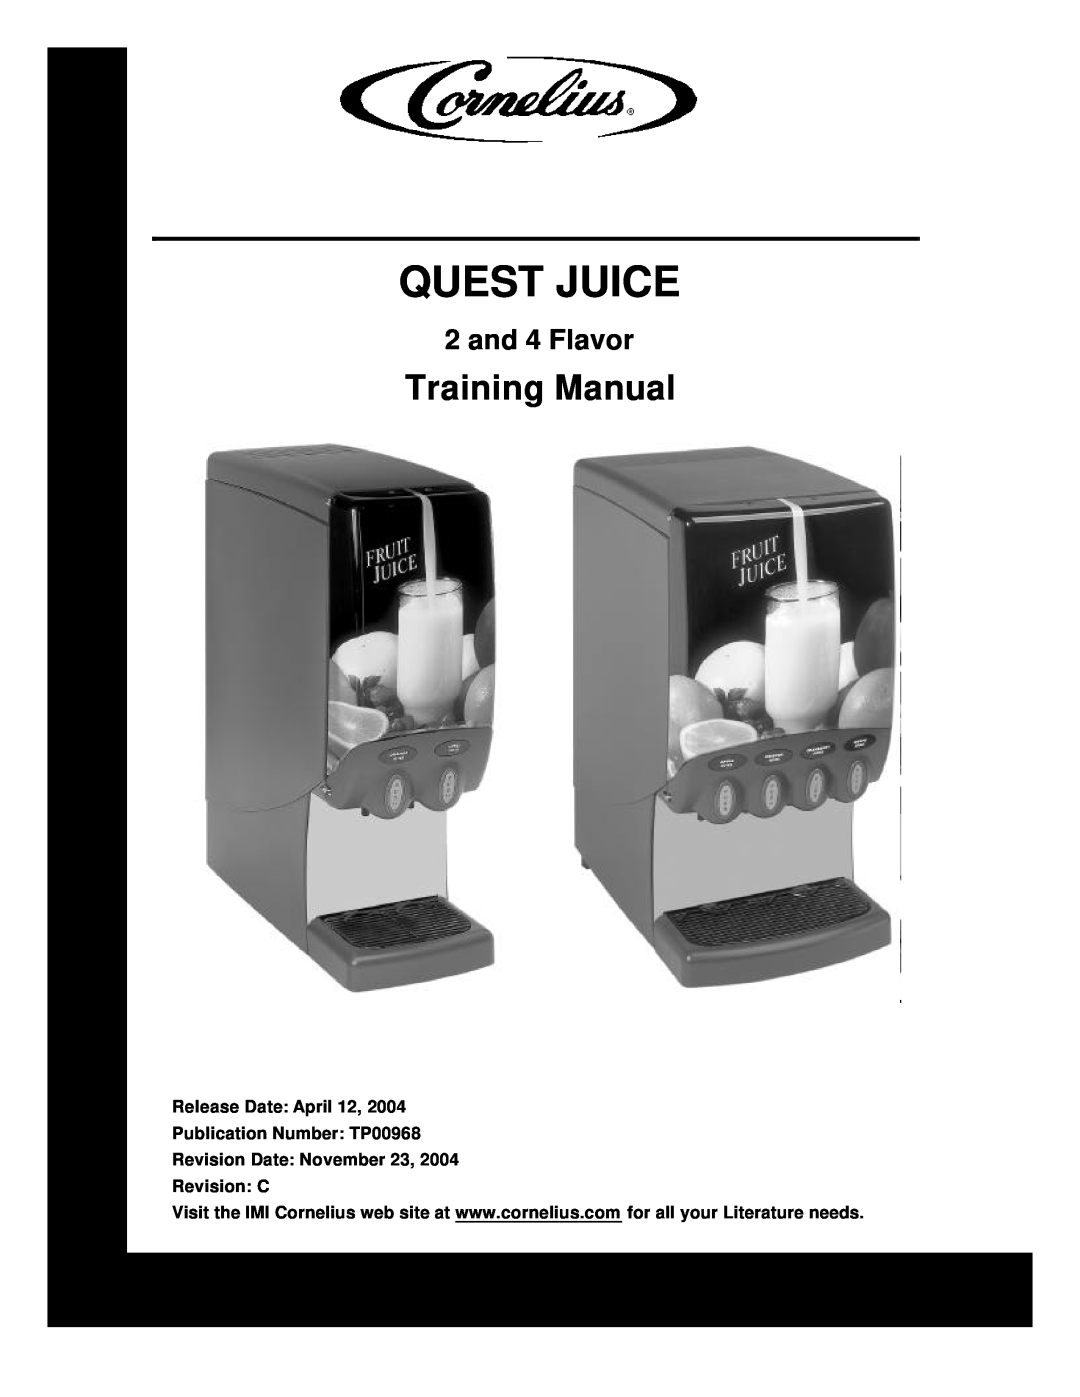 Cornelius 2 Flavor manual Training Manual, Quest Juice, and 4 Flavor 